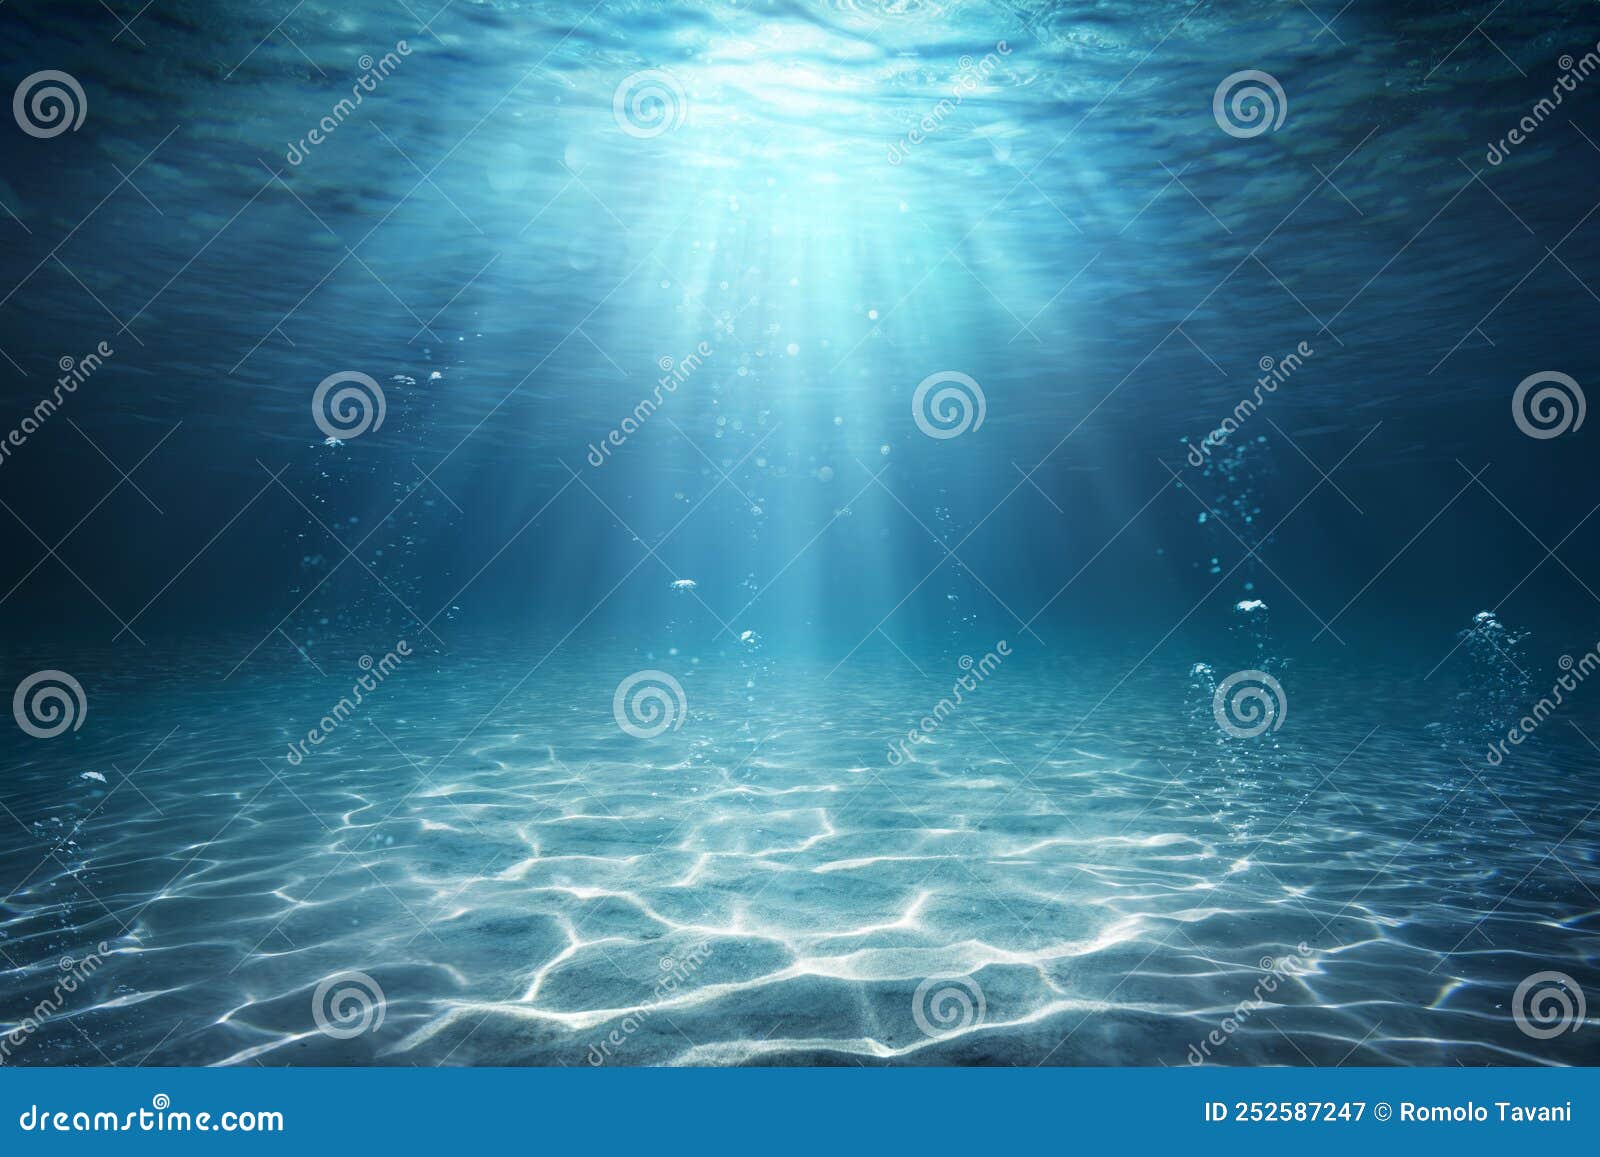 underwater sea - deep water abyss